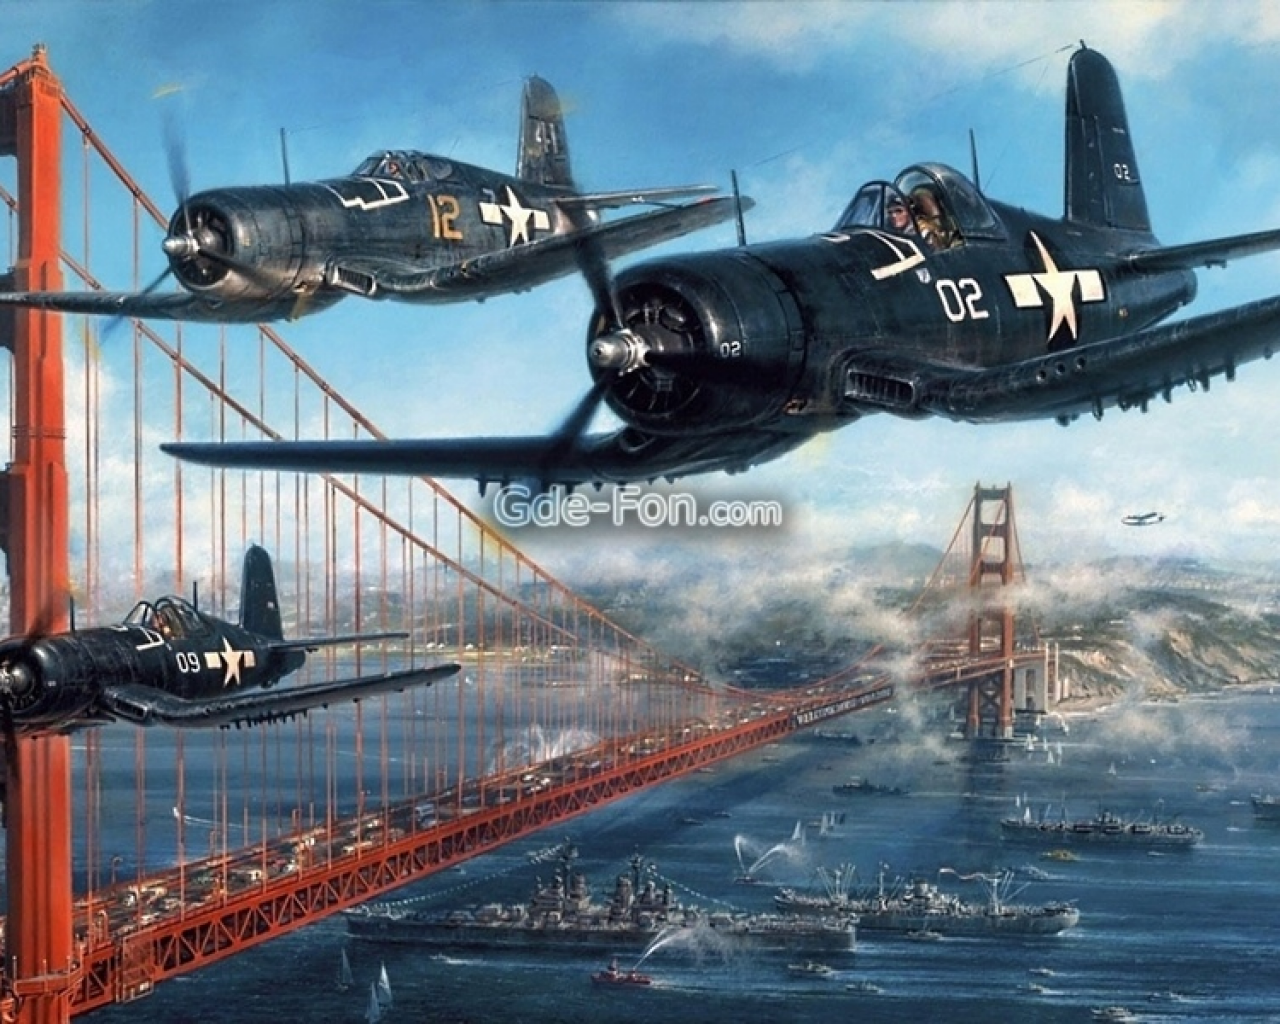 ВВС США, палубный истребитель, самолет, рисунок, пролив, мост золотые ворота, корабли